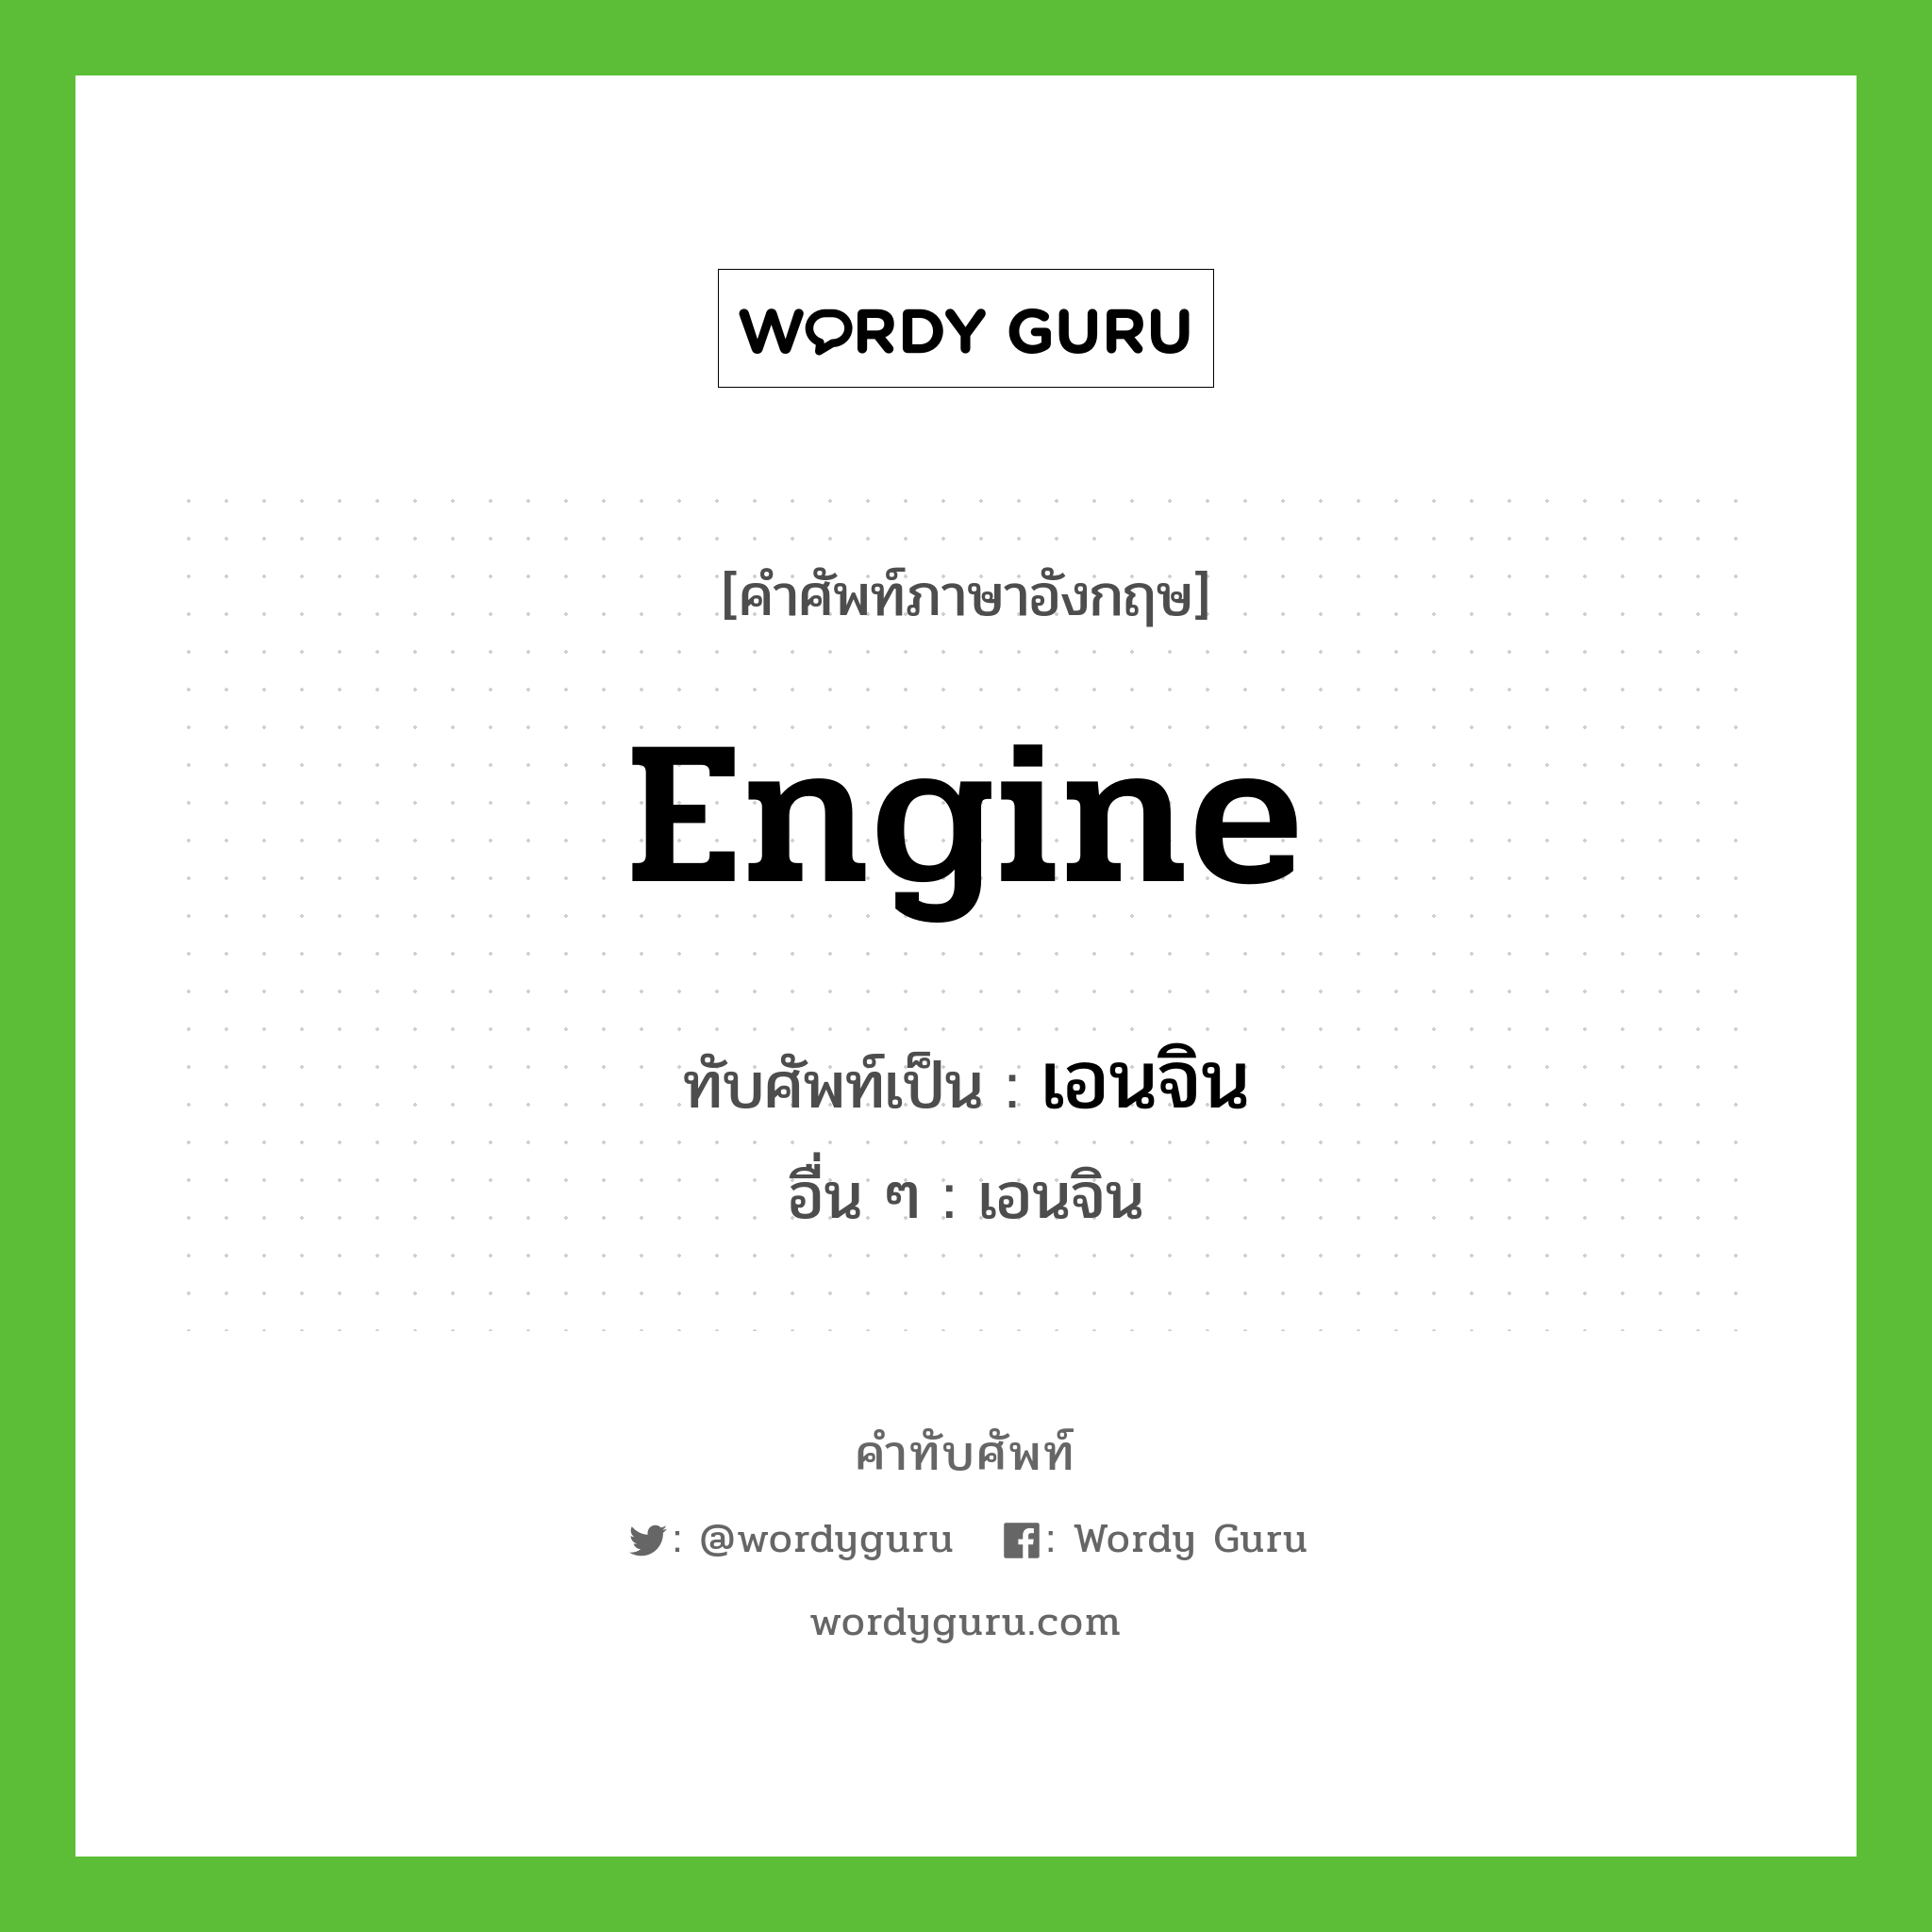 engine เขียนเป็นคำไทยว่าอะไร?, คำศัพท์ภาษาอังกฤษ engine ทับศัพท์เป็น เอนจิน อื่น ๆ เอนจิน